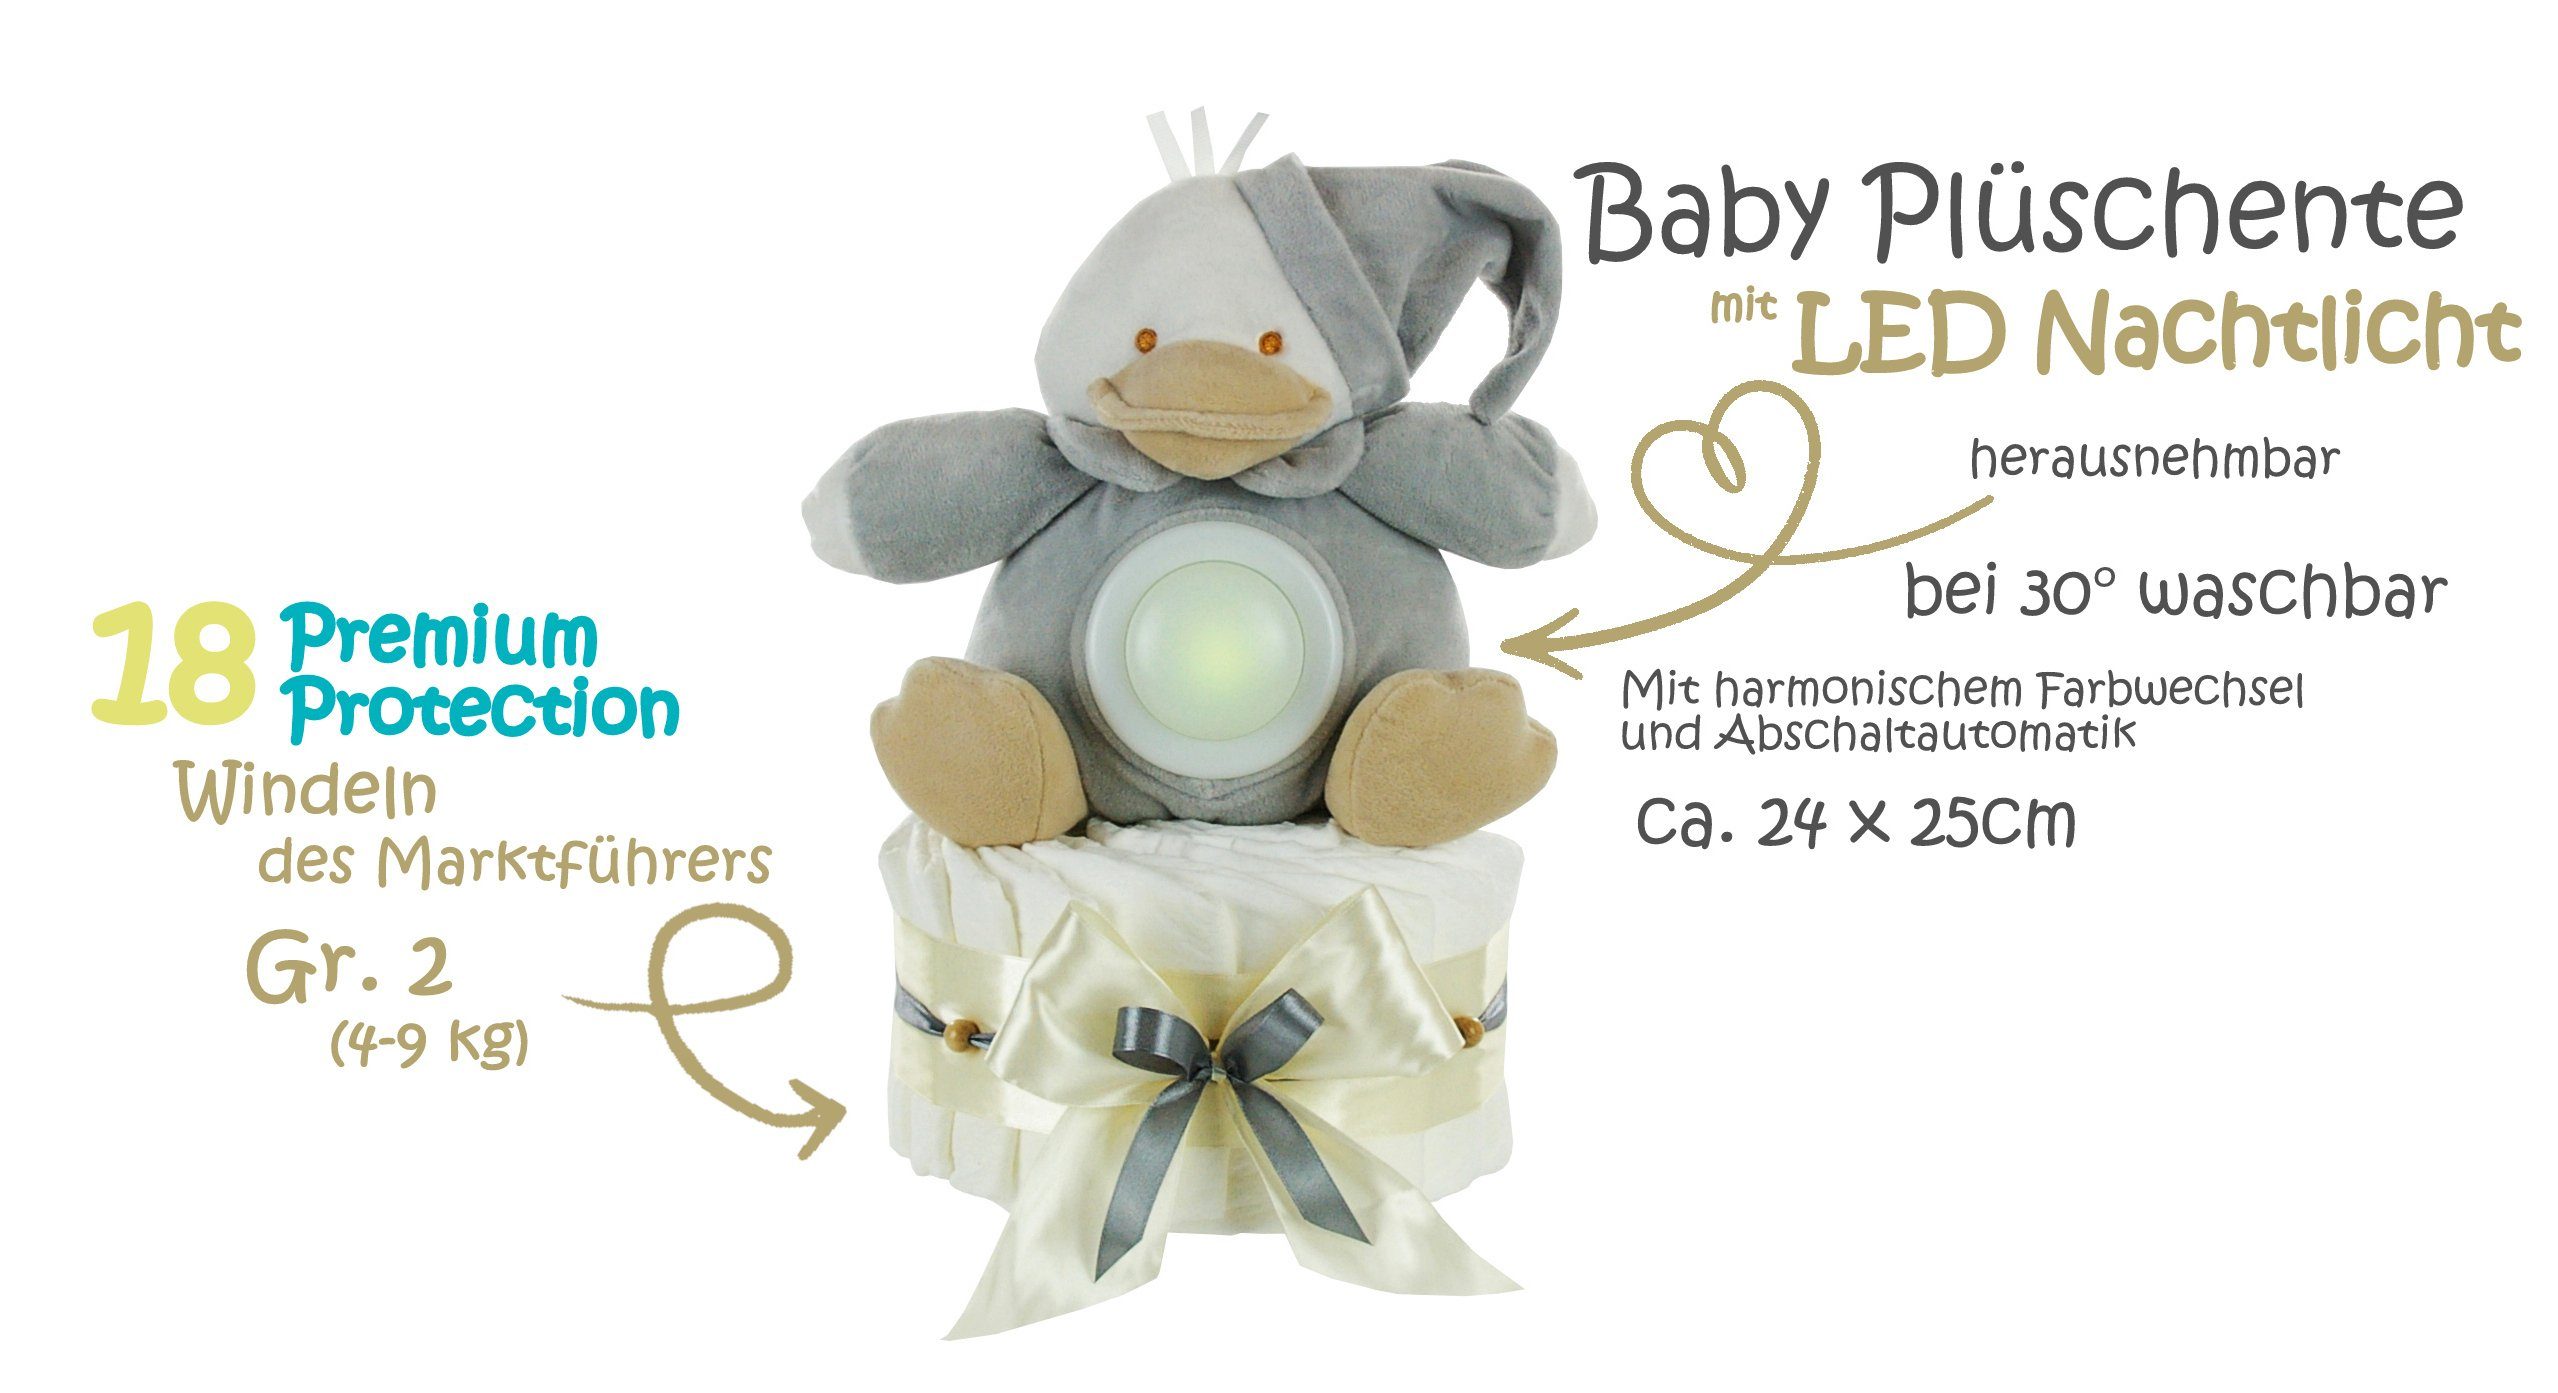 dubistda-WINDELTORTEN- Neugeborenen-Geschenkset Neutrale + Windeltorte LED-Nachtlicht Grußkarte Ente Kuscheltier 35cm